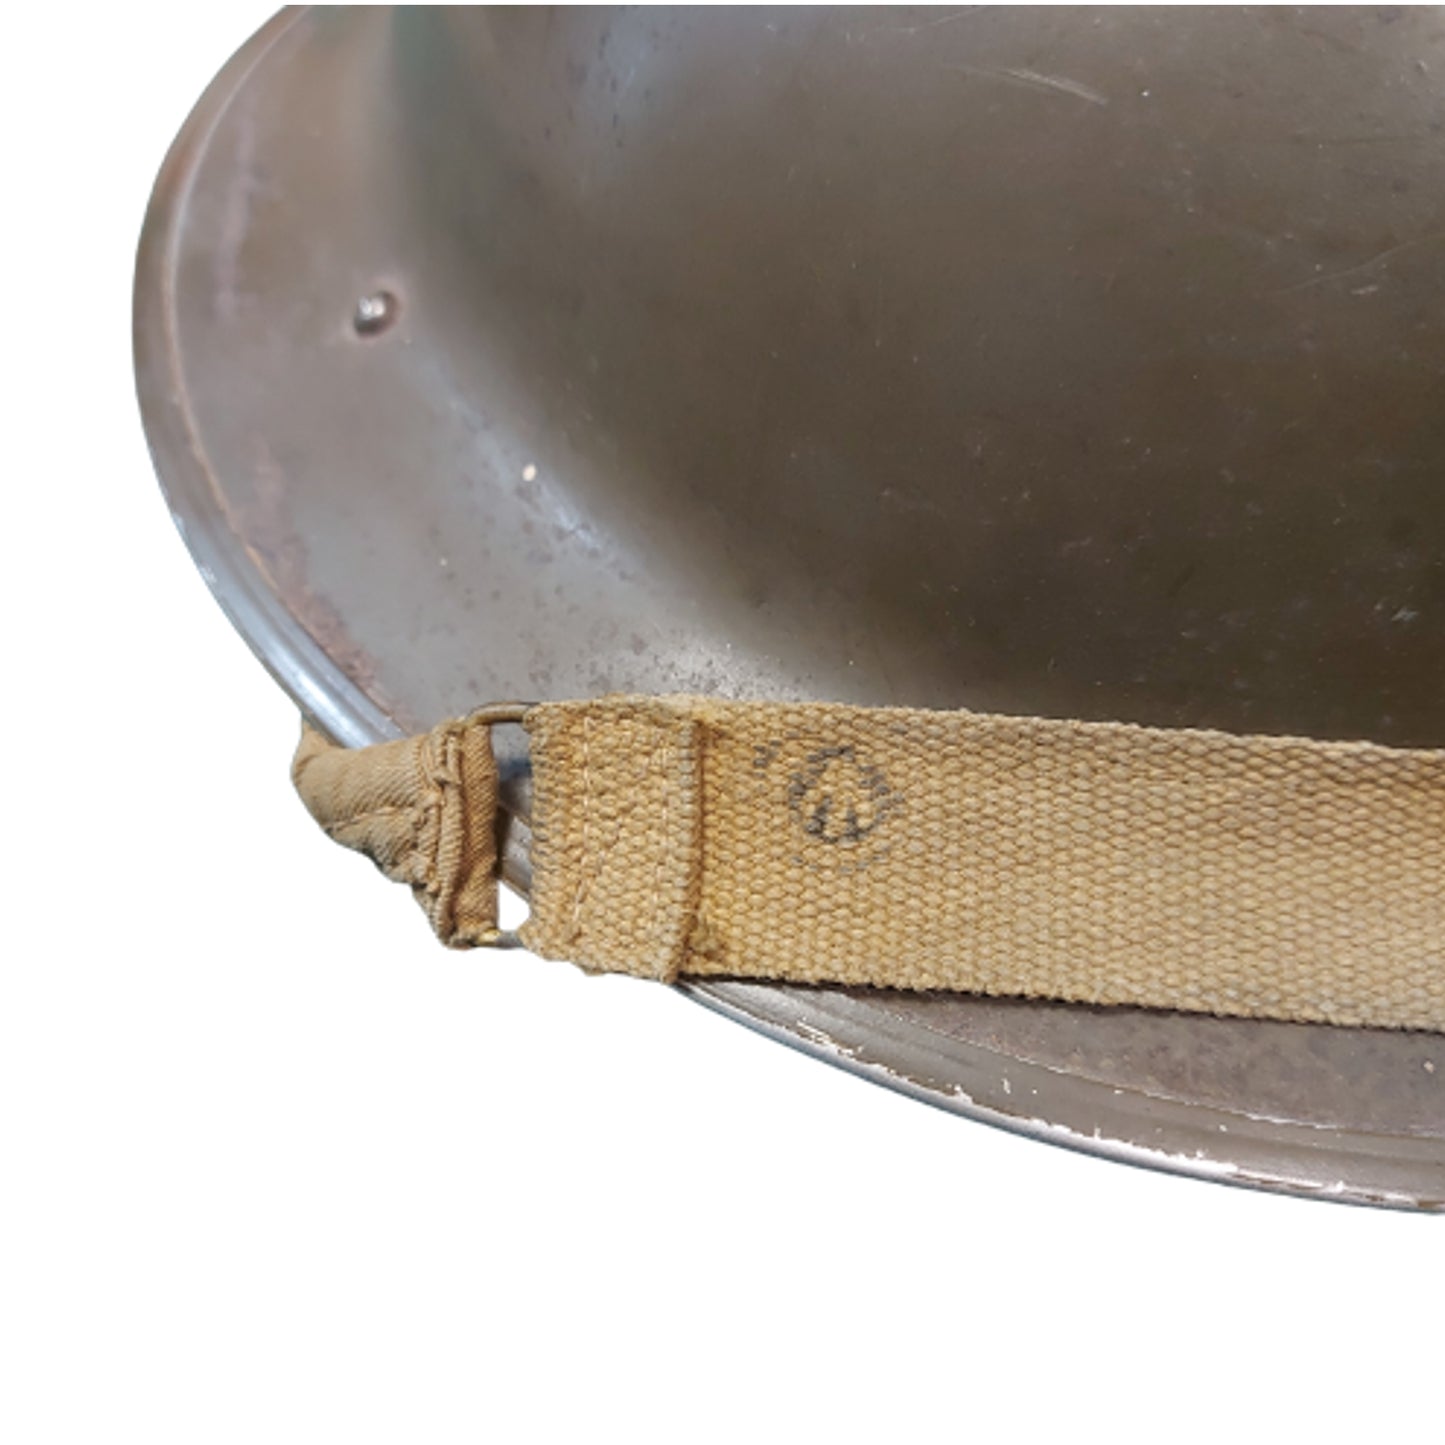 WW2 Canadian Combat Helmet Dated 1942